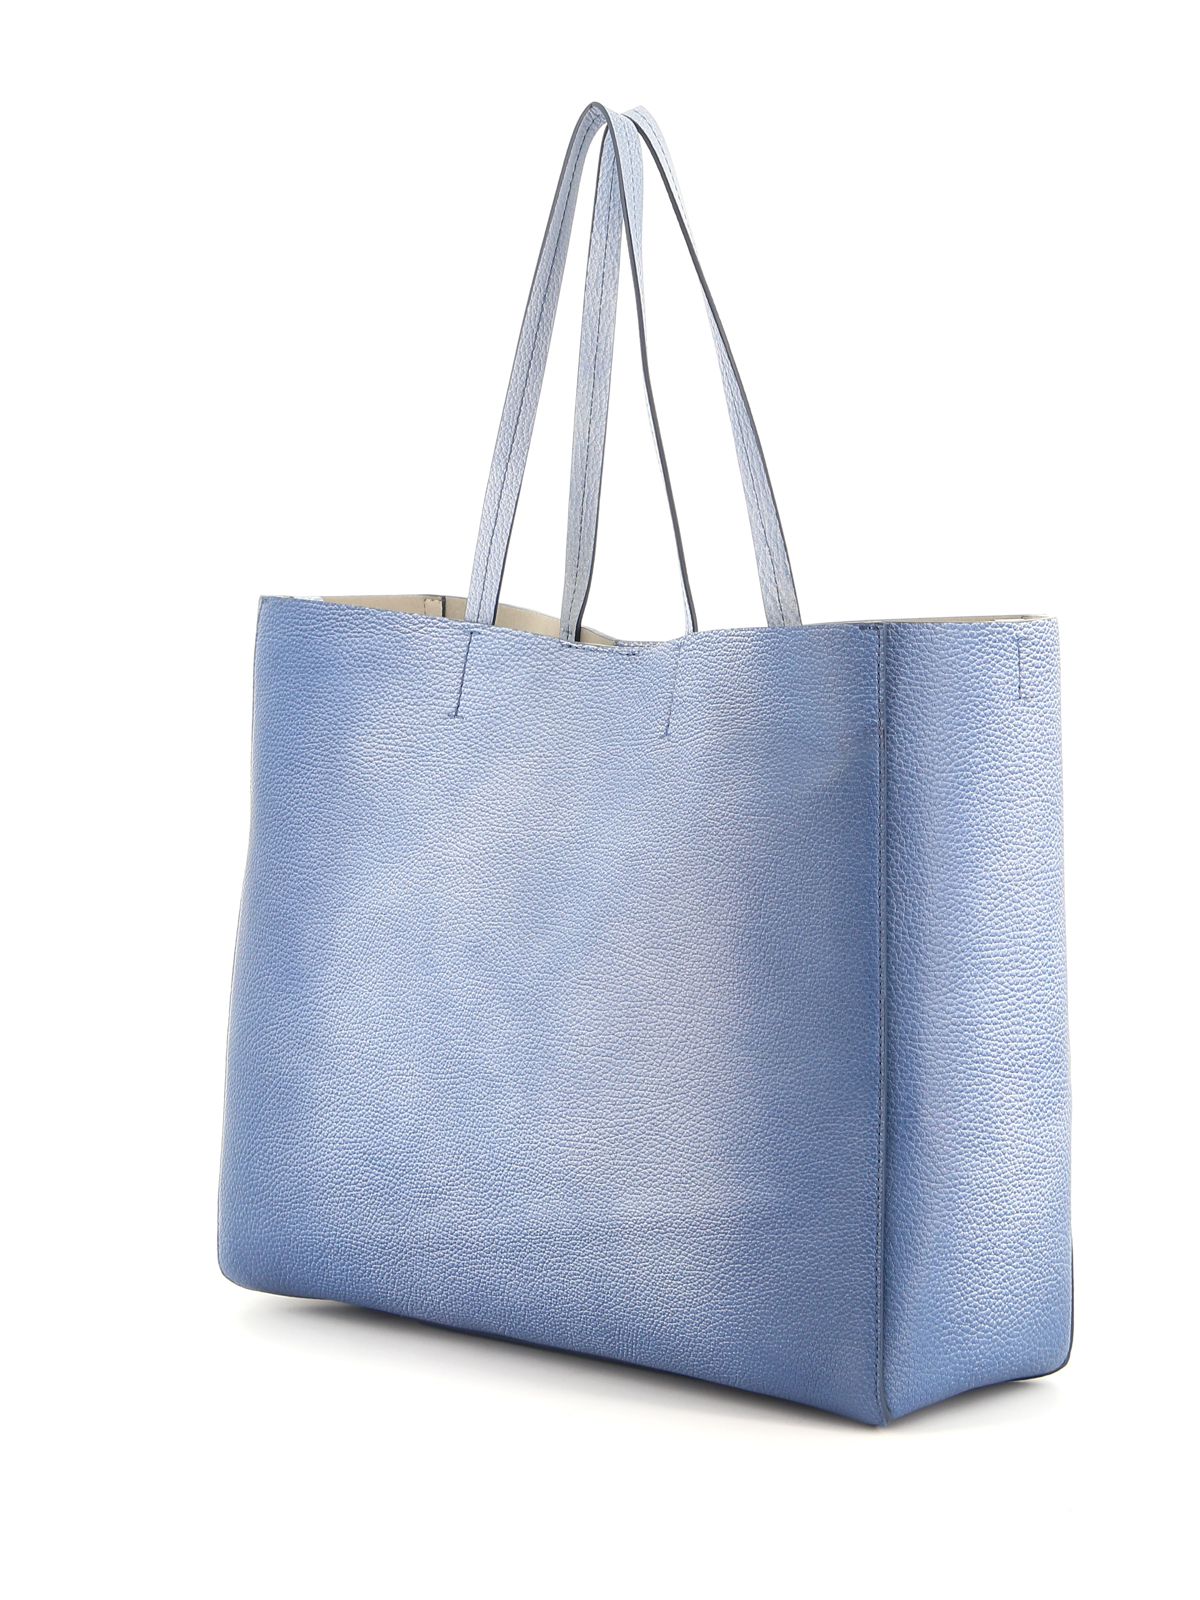 Shopper S20 in hellblau von Zwei Taschen